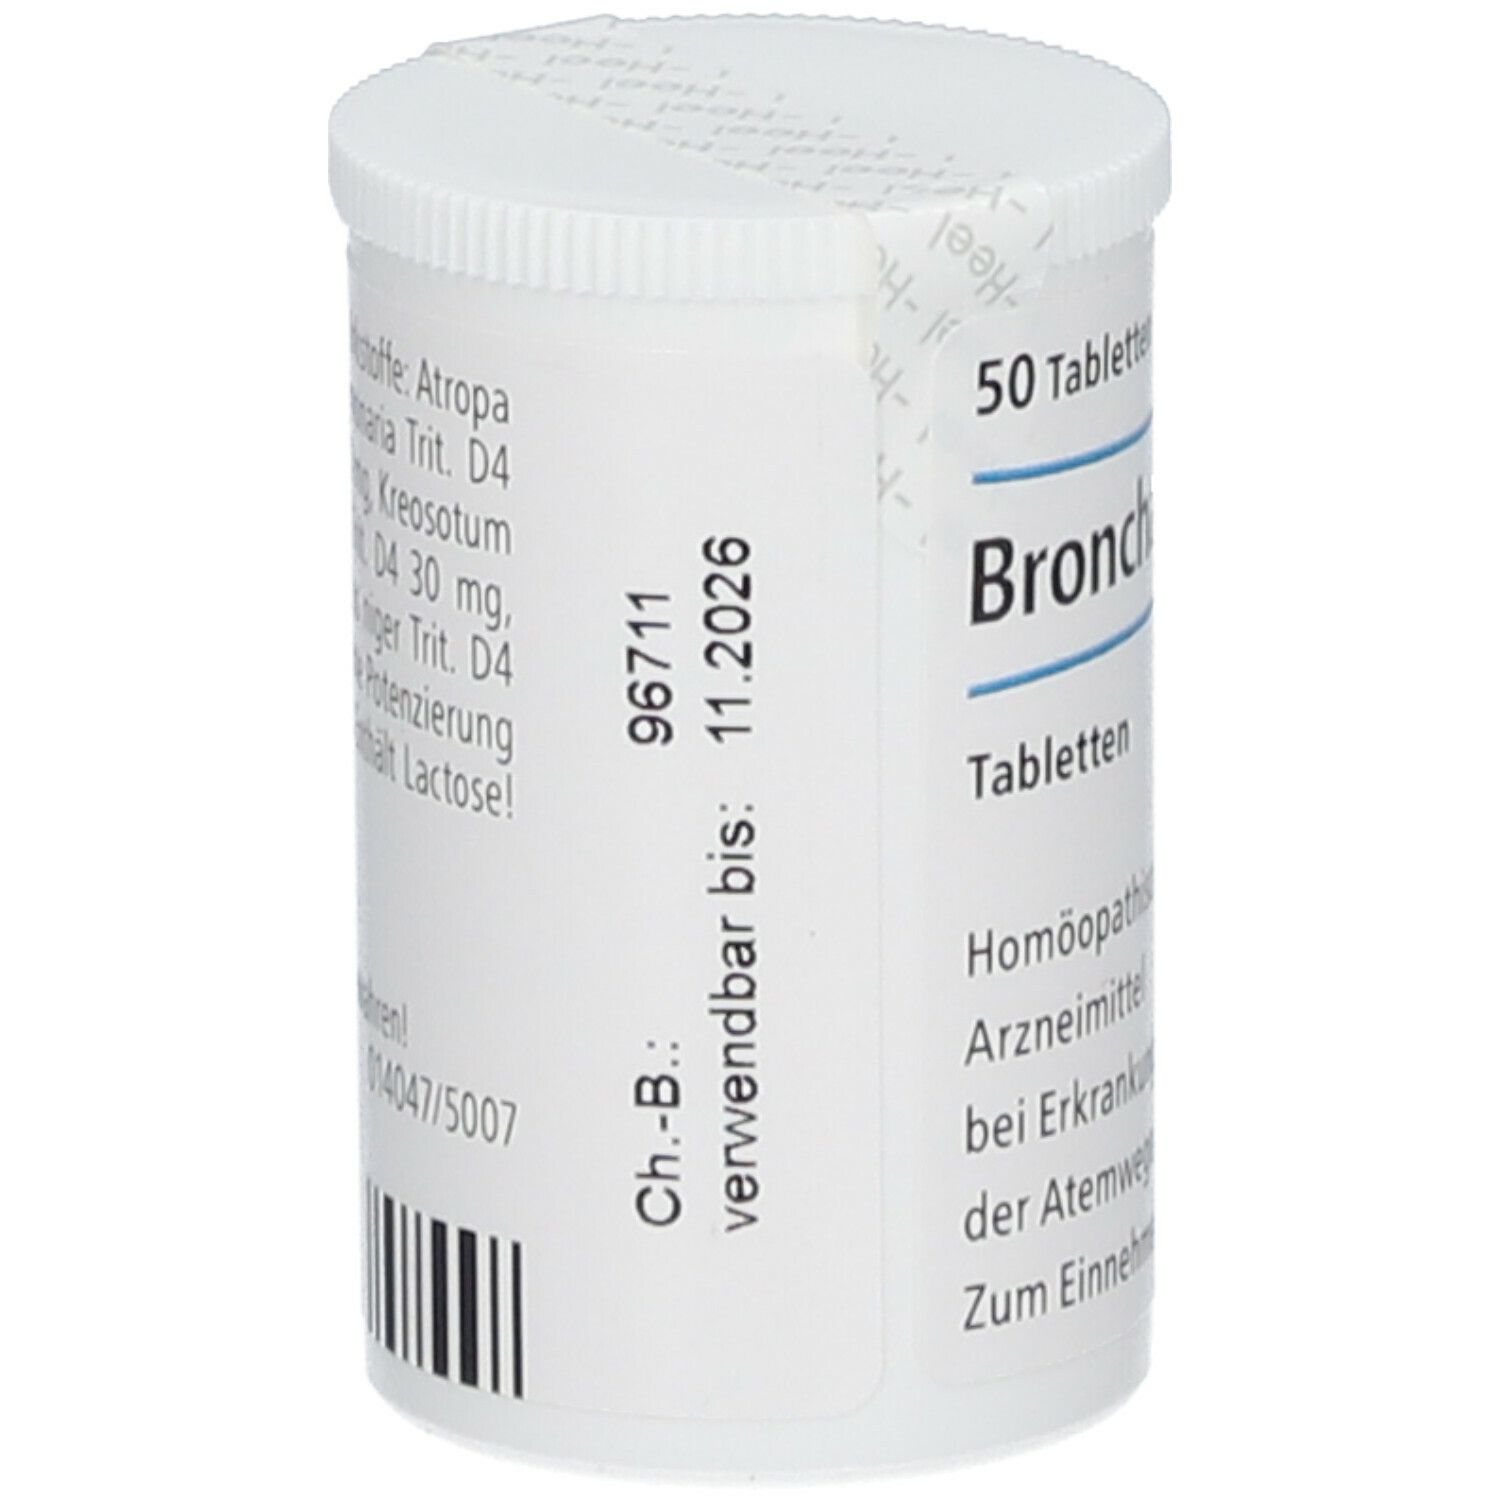 Bronchalis-Heel® Tabletten